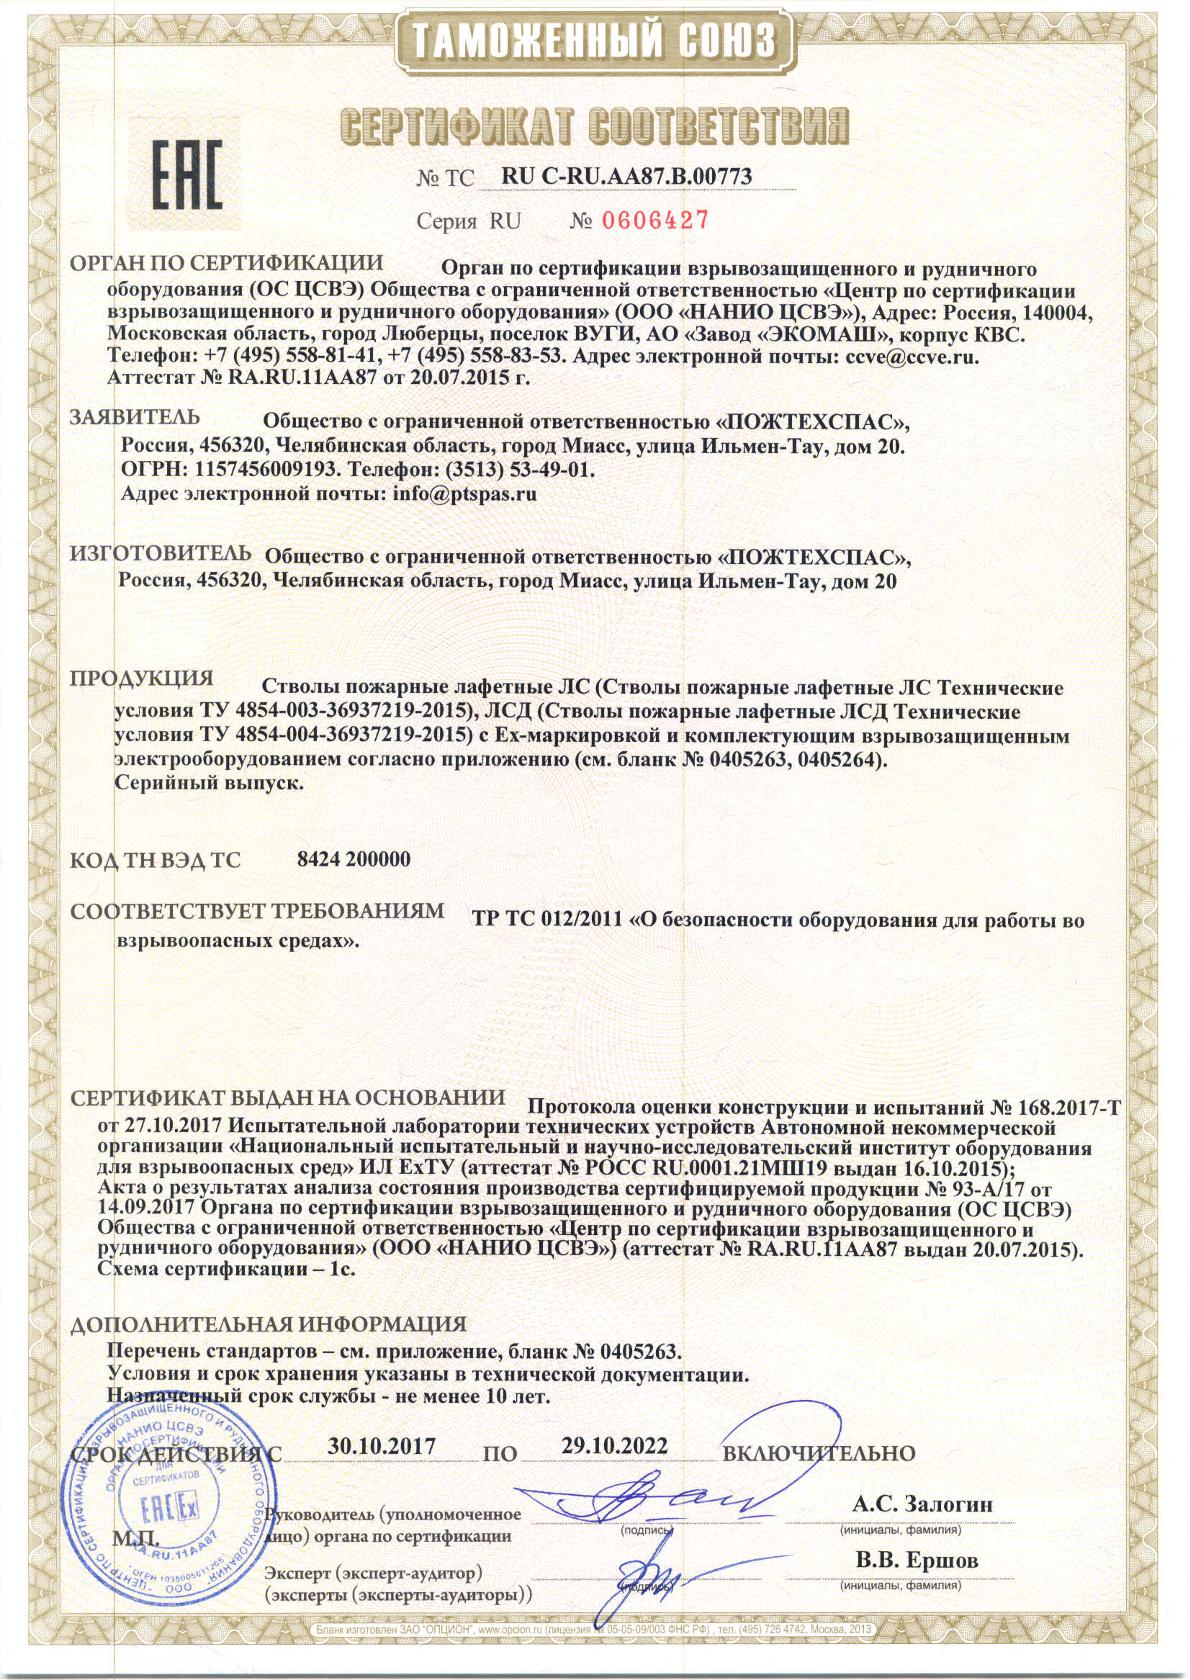 Сертификат соответствия стволы пожарные лафетные ЛС, ЛСД